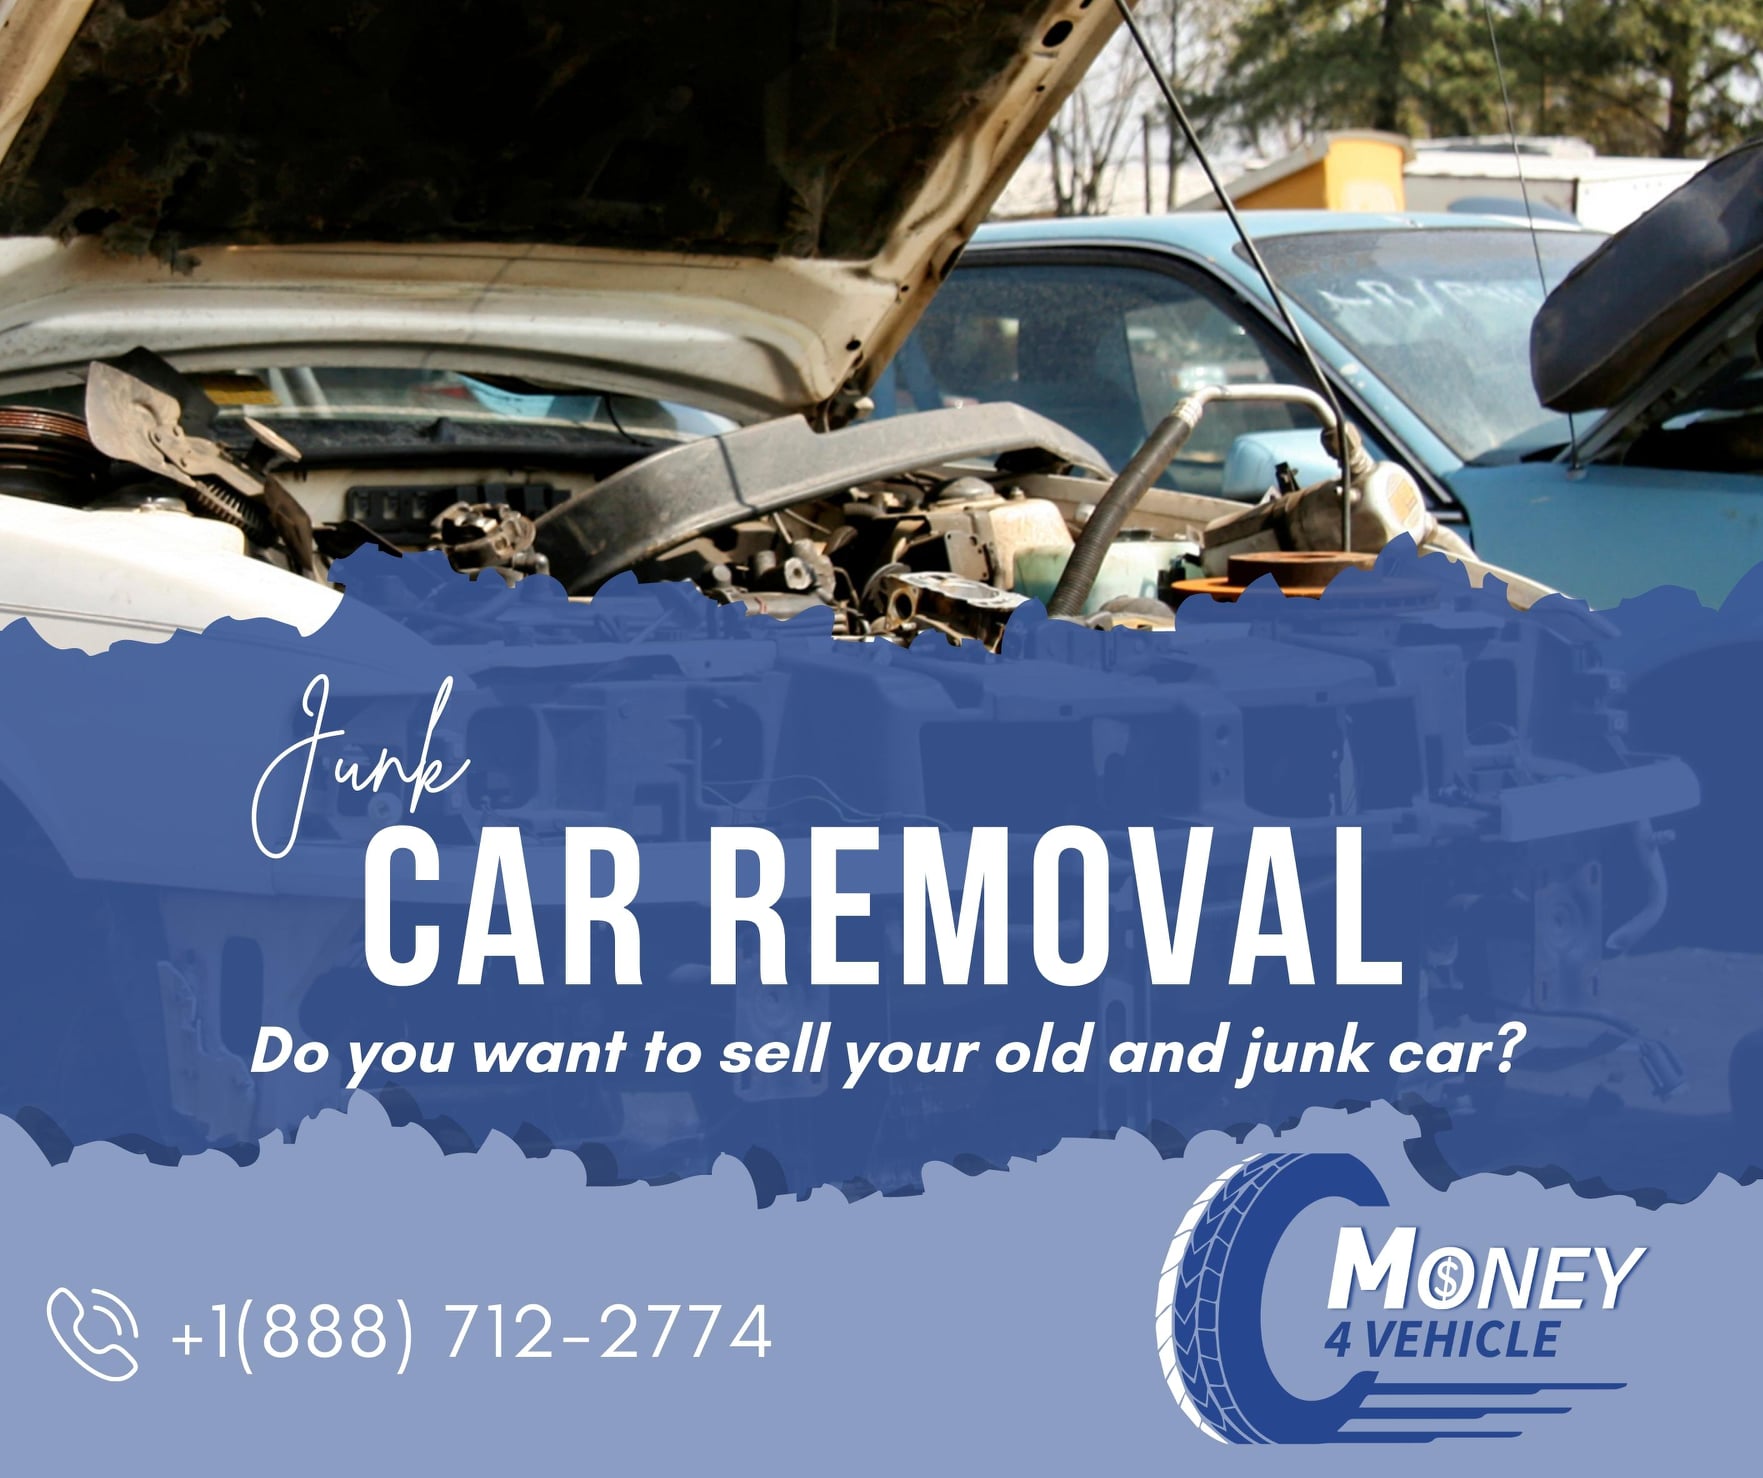 Junk car removal company in NJ